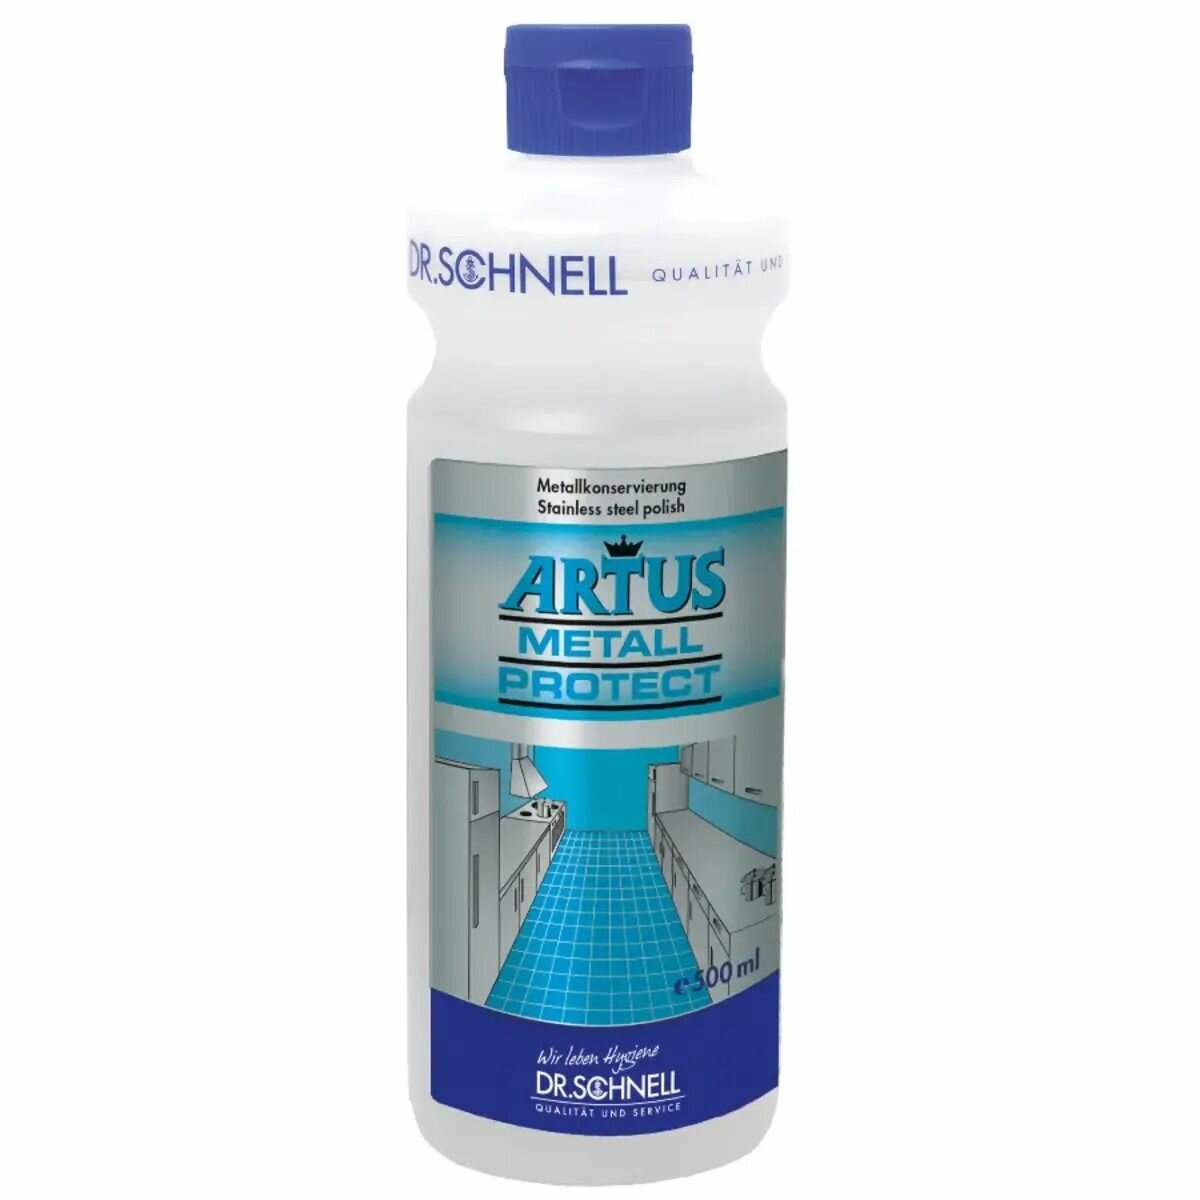 Моющее средство для ухода за поверхностями из нержавеющей стали Artus Metall Protect, Dr.Schnell